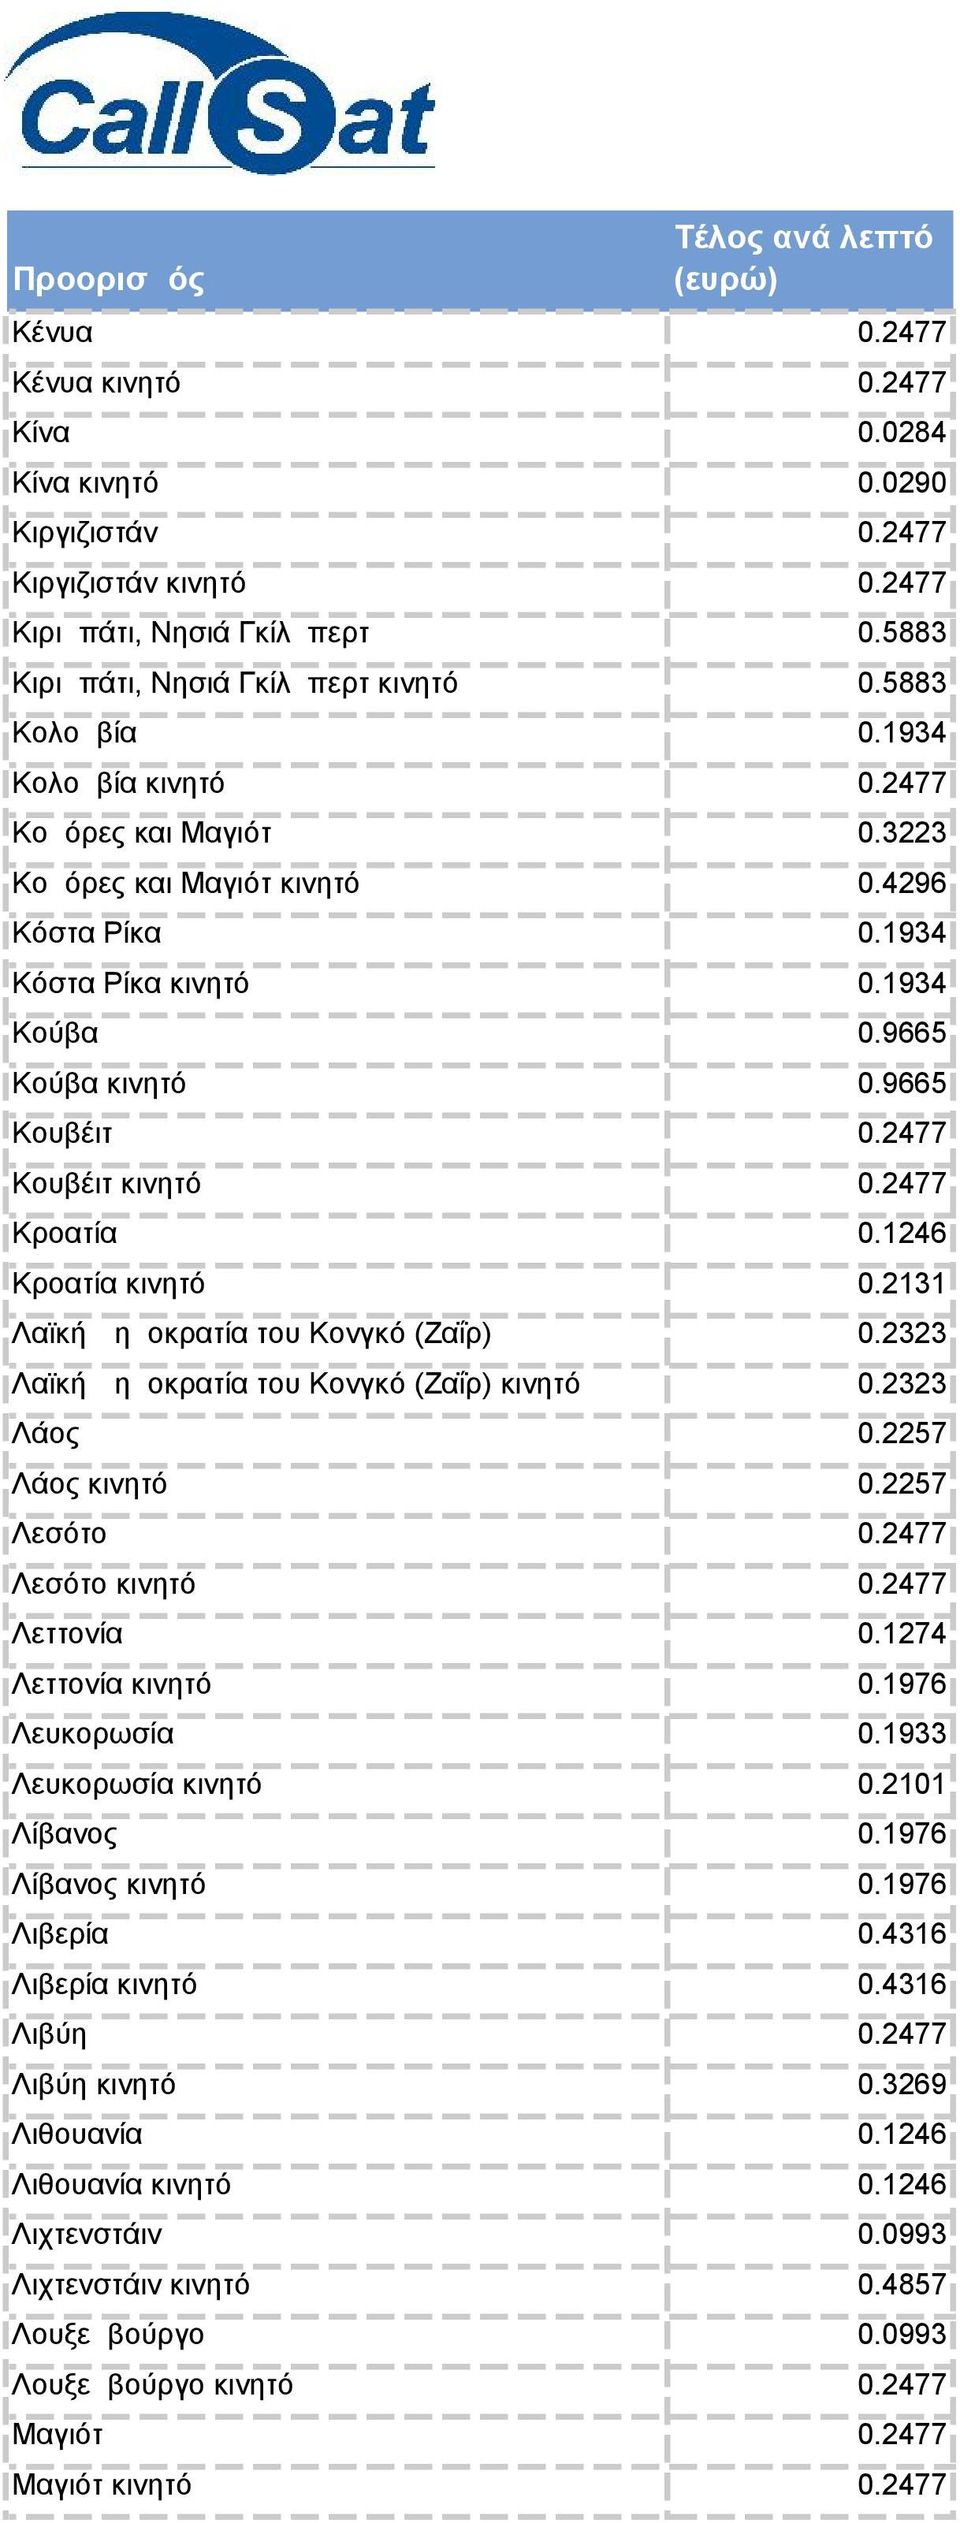 2477 Κροατία 0.1246 Κροατία κινητό 0.2131 Λαϊκή Δημοκρατία του Κονγκό (Ζαΐρ) 0.2323 Λαϊκή Δημοκρατία του Κονγκό (Ζαΐρ) κινητό 0.2323 Λάος 0.2257 Λάος κινητό 0.2257 Λεσότο 0.2477 Λεσότο κινητό 0.